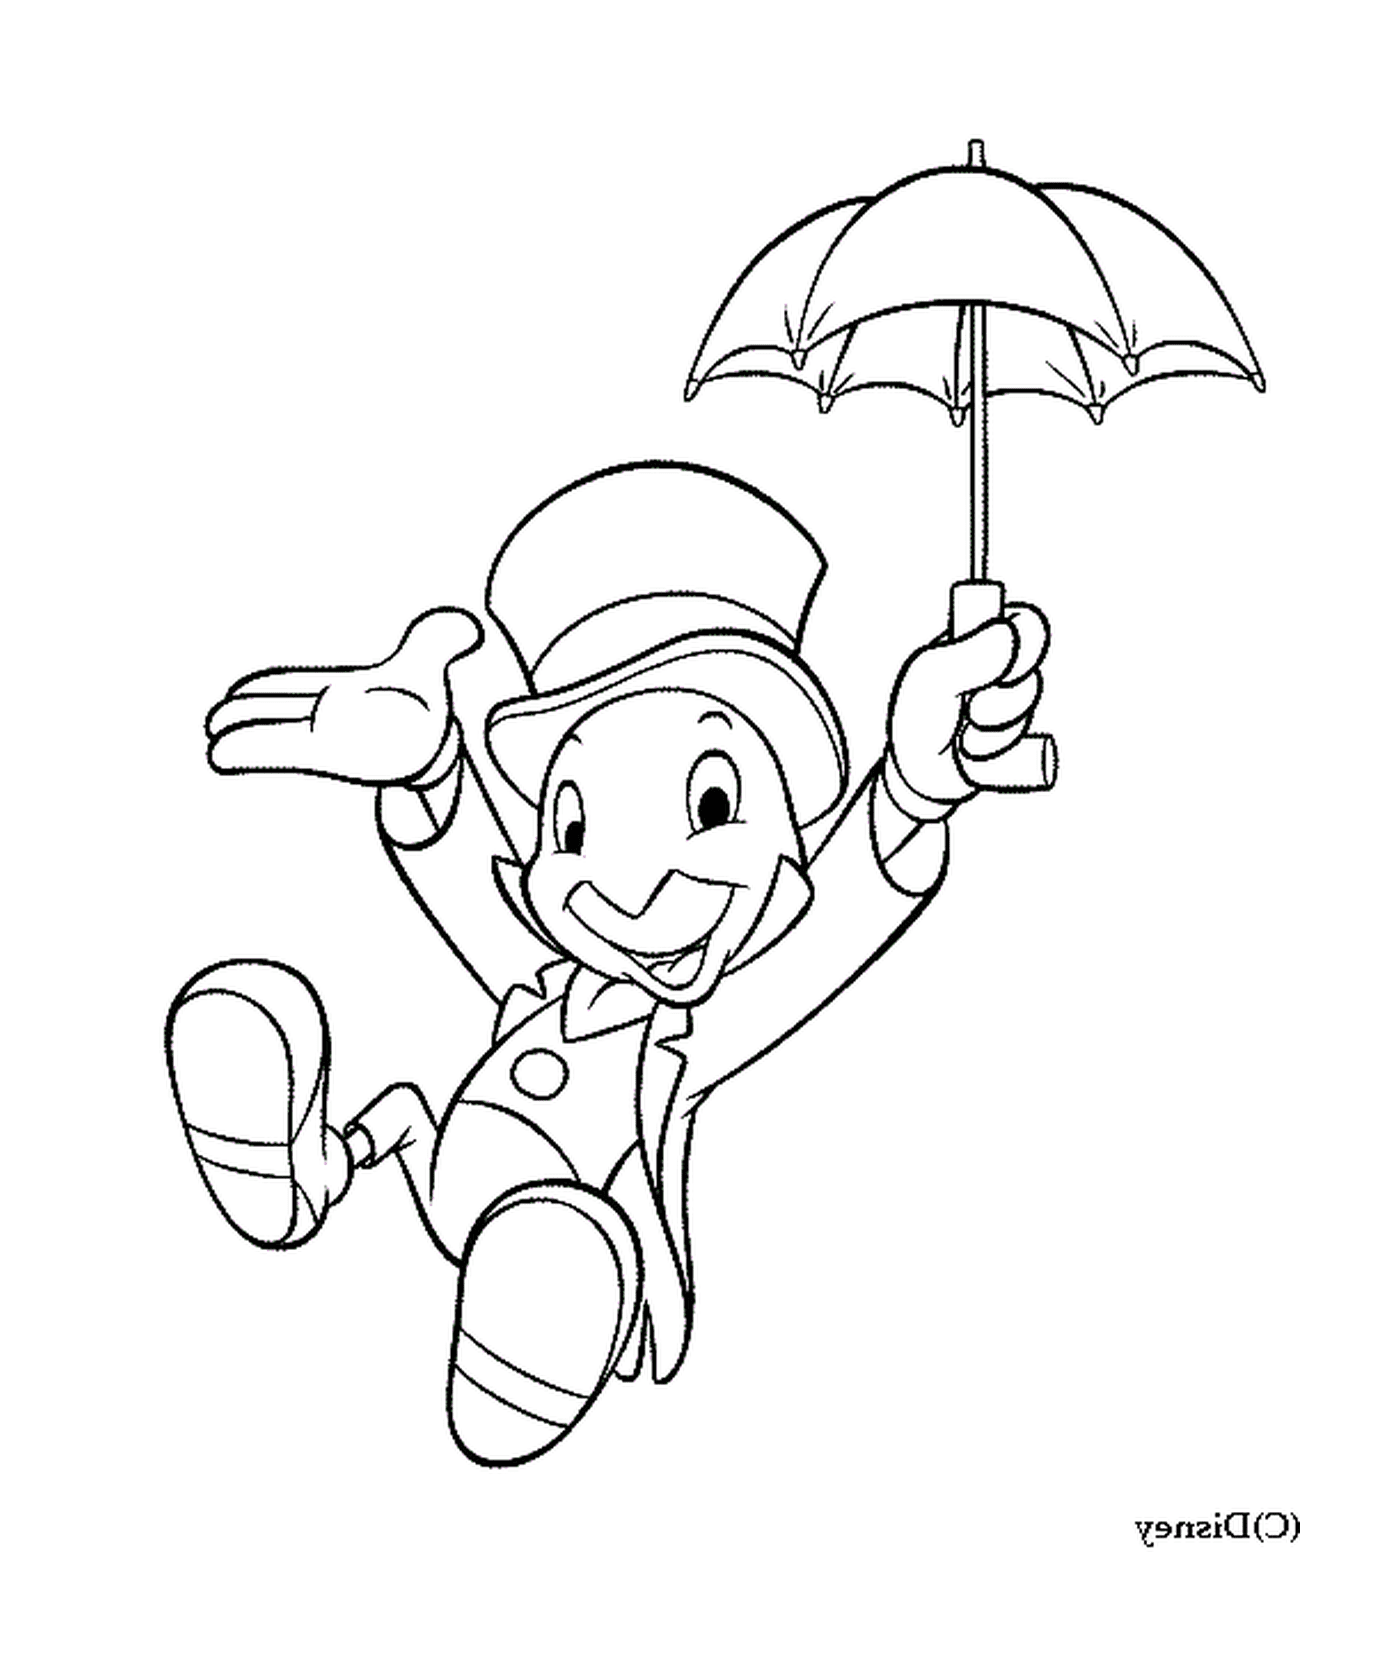  Jiminy Cricket com guarda-chuva inteligente 